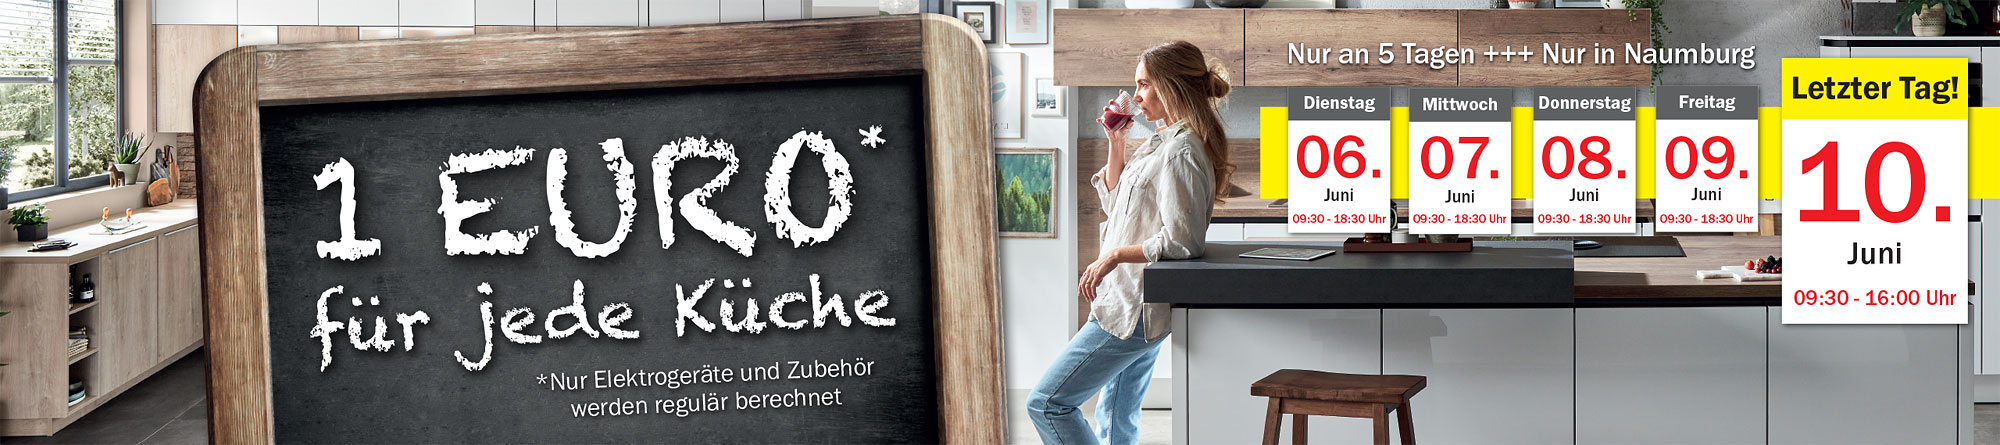 1 Euro* für jede Küche bei Möbel Mit in Naumburg!